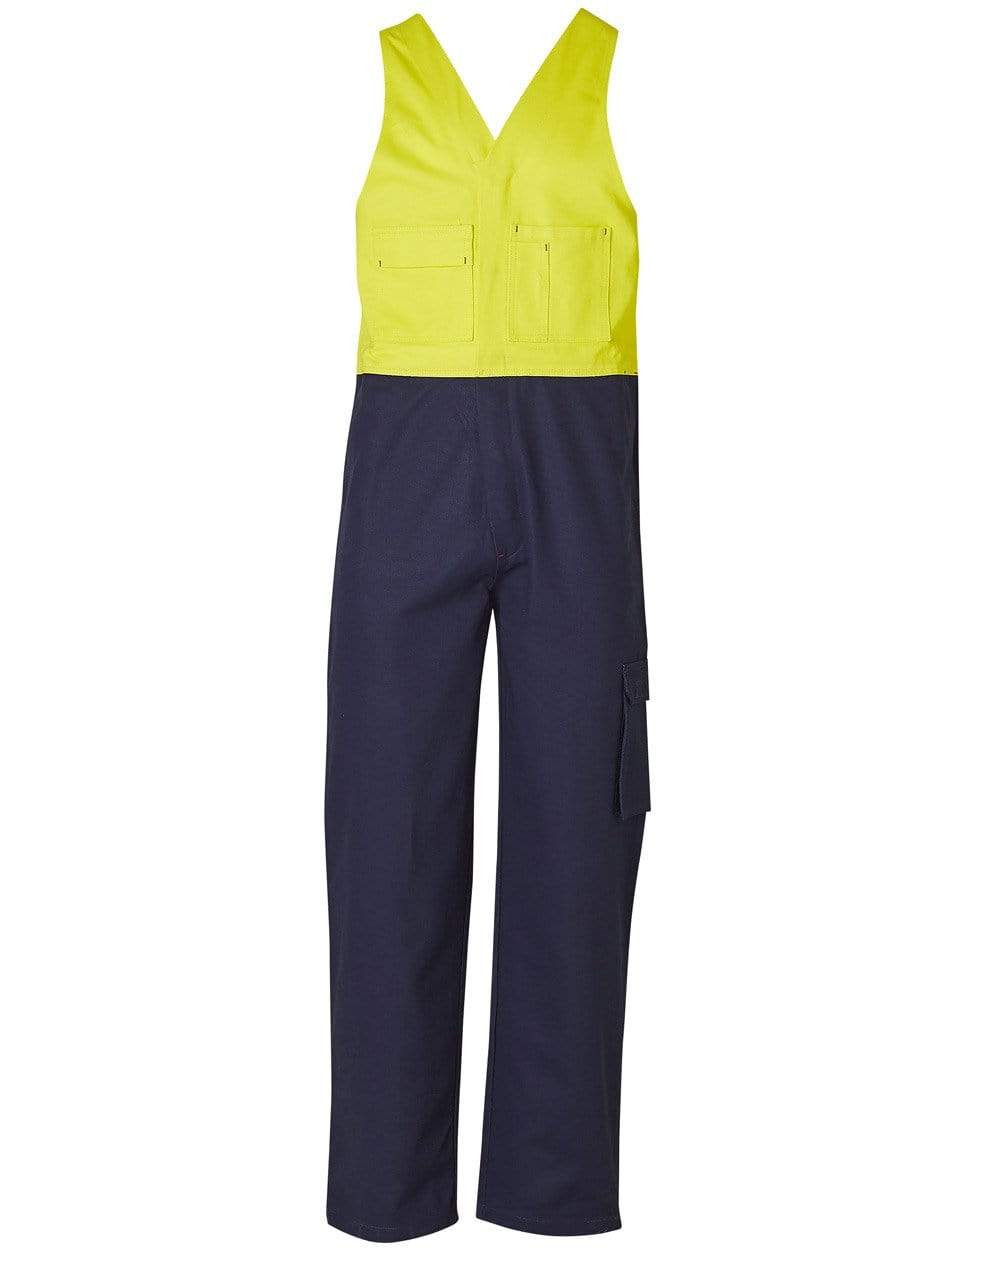 Men's Overall Regular Size SW201 Work Wear Australian Industrial Wear 77R Yellow/Navy 